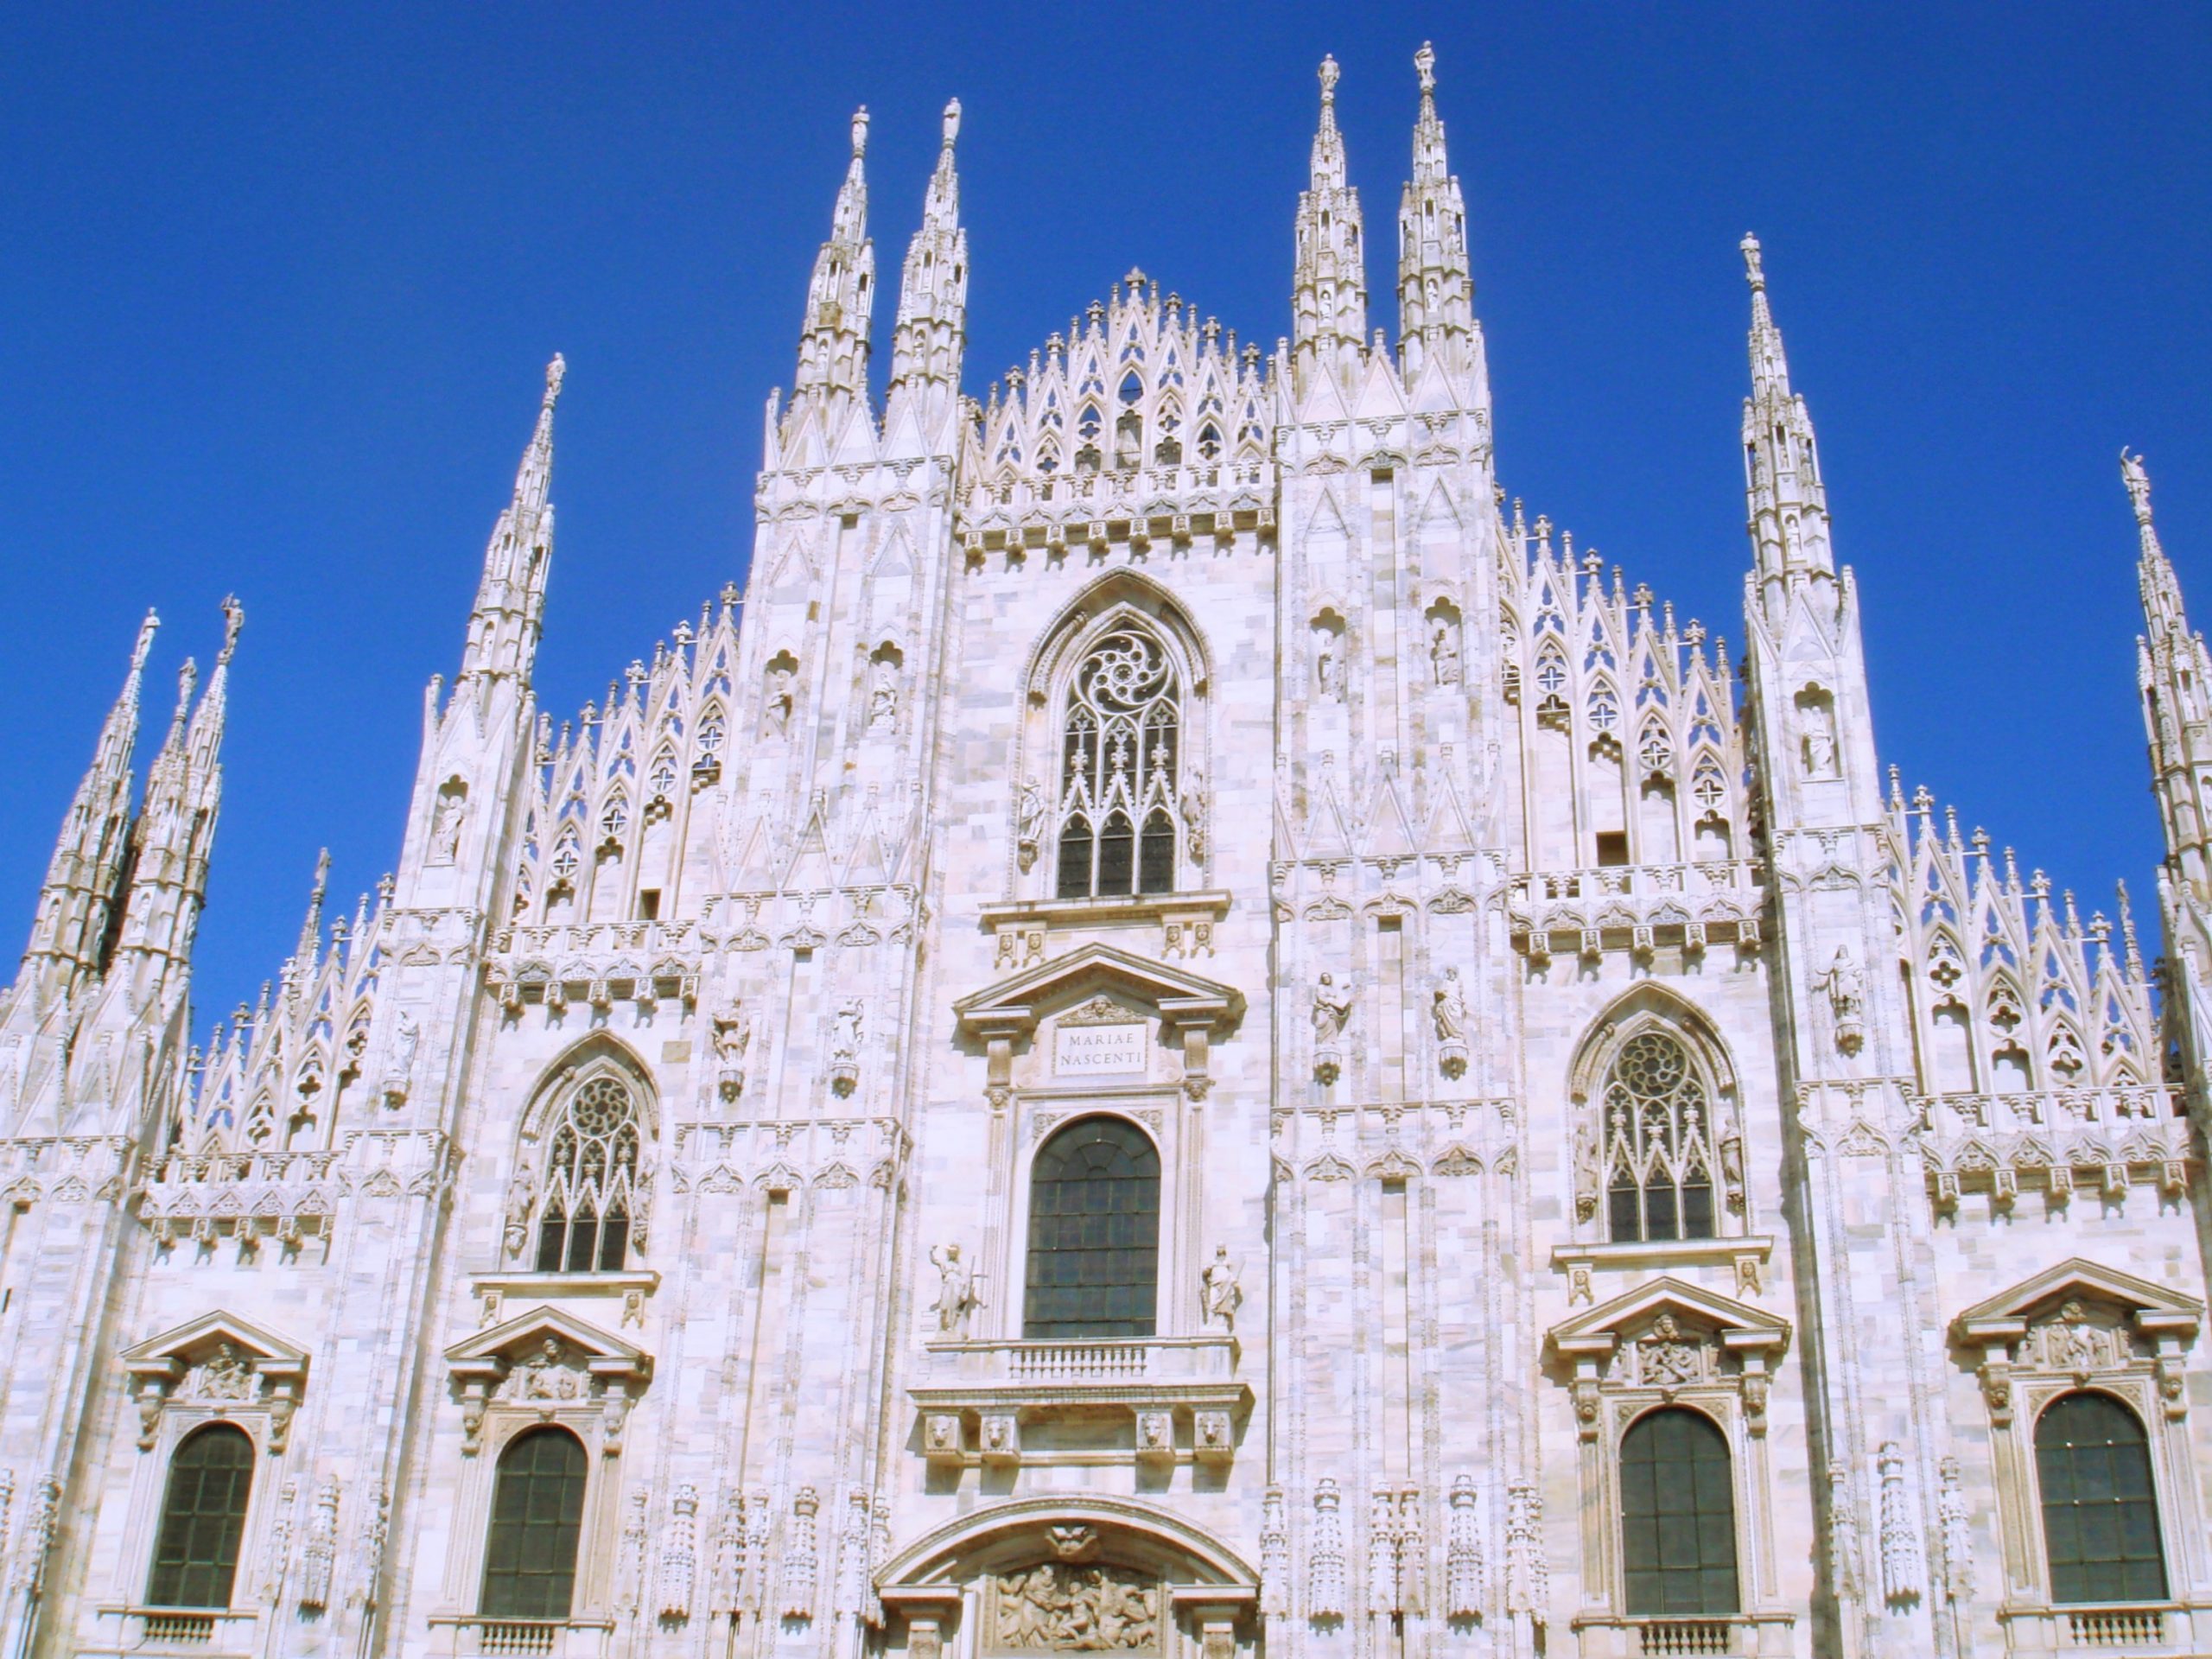 Milan-Duomo